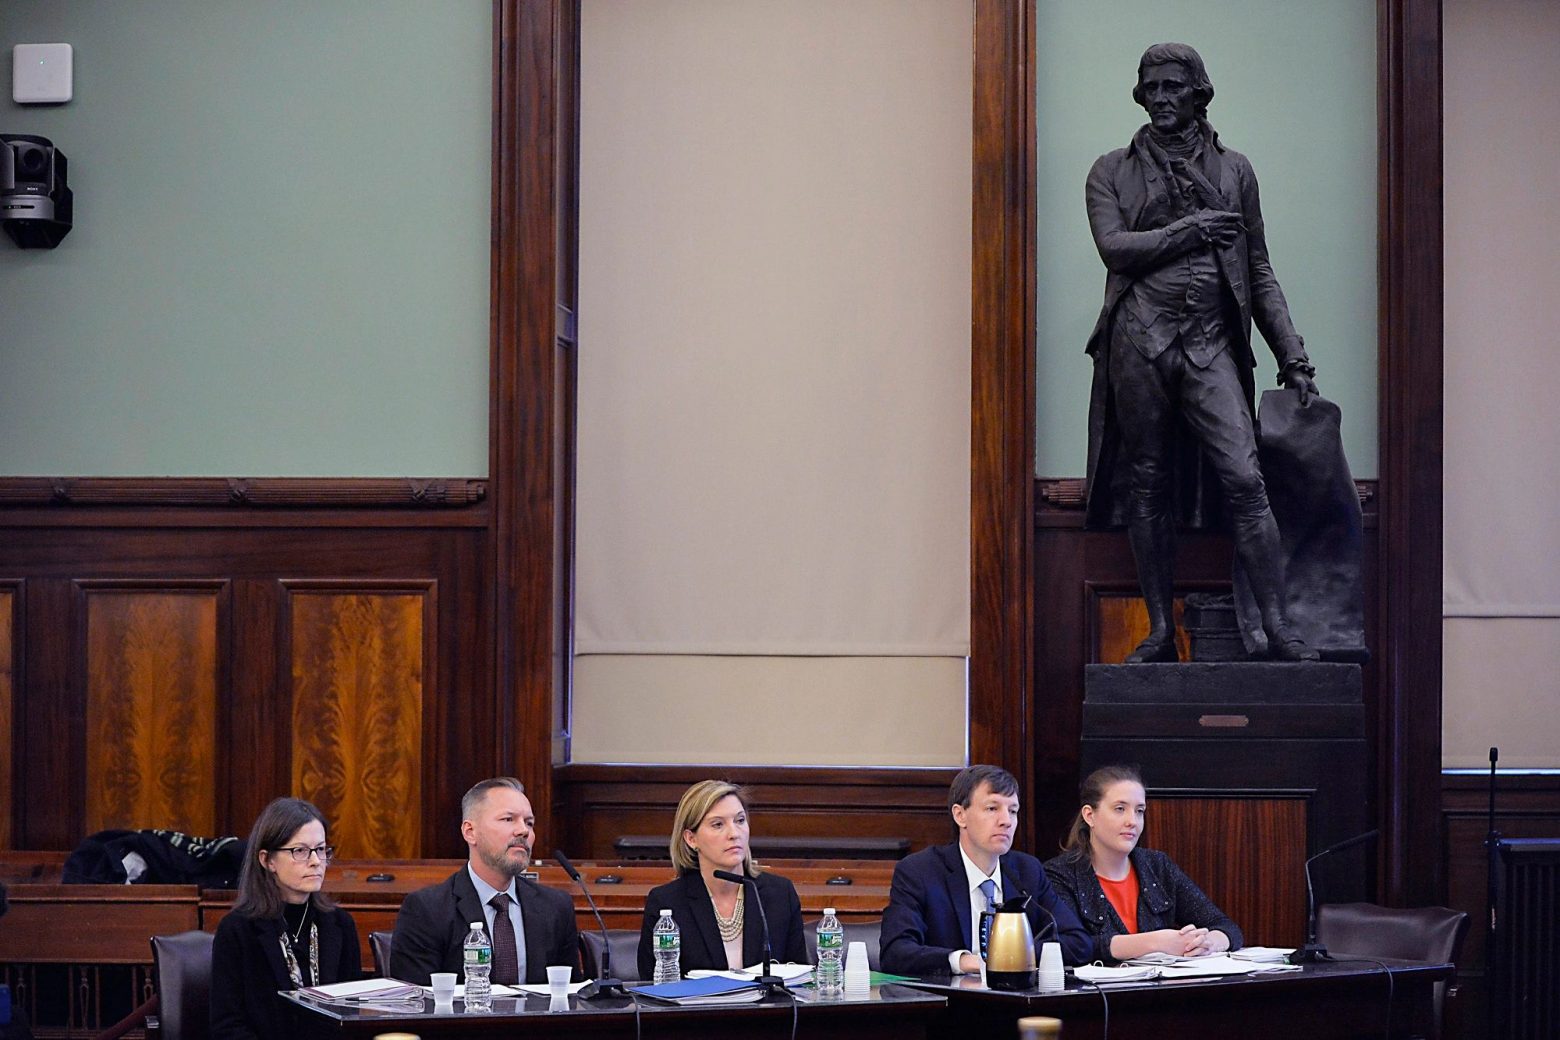 Ιστορική απόφαση - Το άγαλμα του Τζέφερσον απομακρύνθηκε από το Δημαρχείο της Νέας Υόρκης